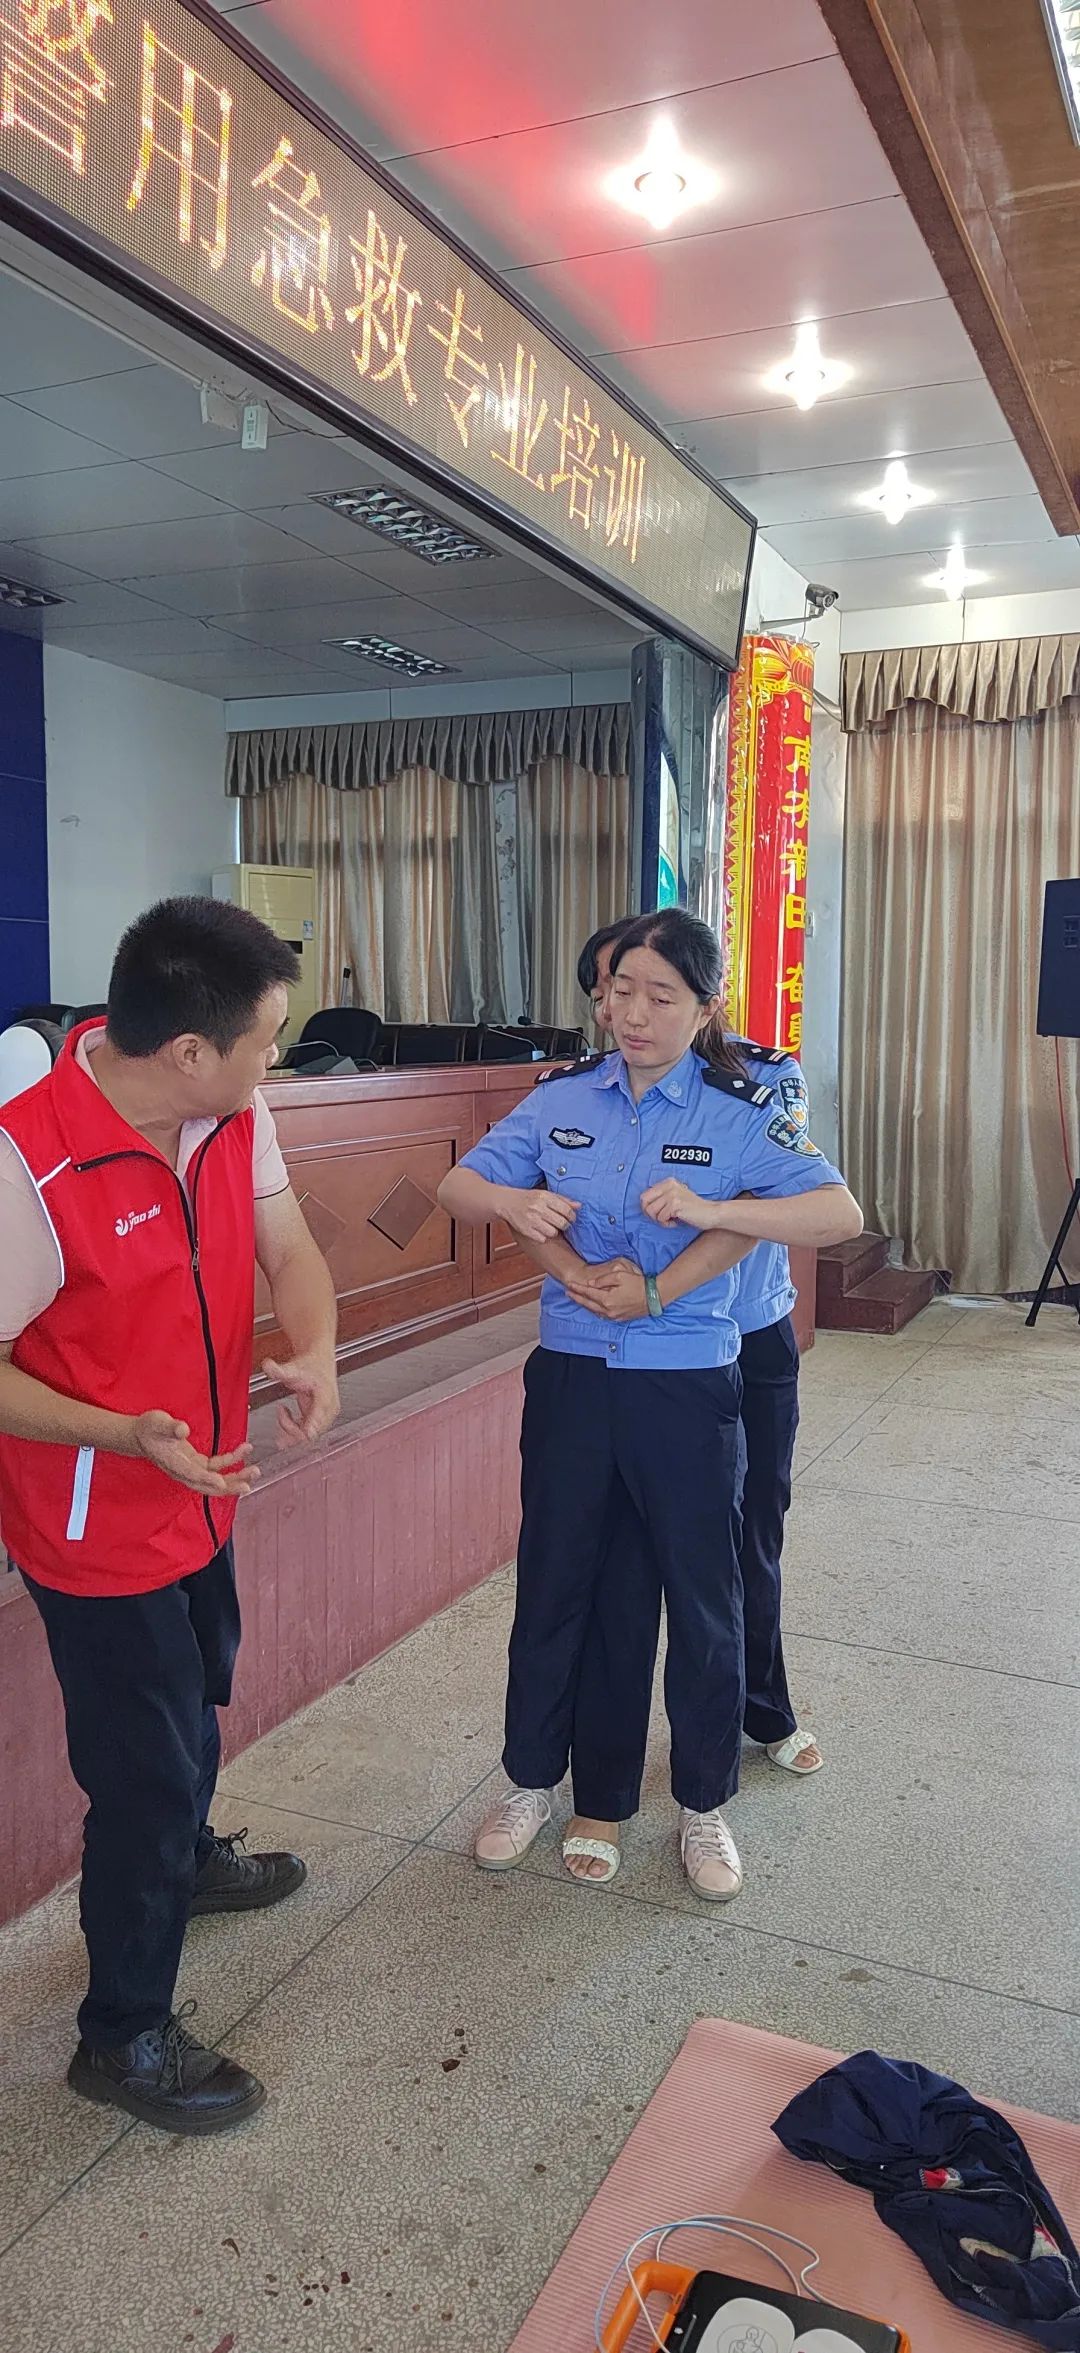 警企同心 共筑平安 | 广州耀致向湖南省公安厅捐赠一批AED急救箱！